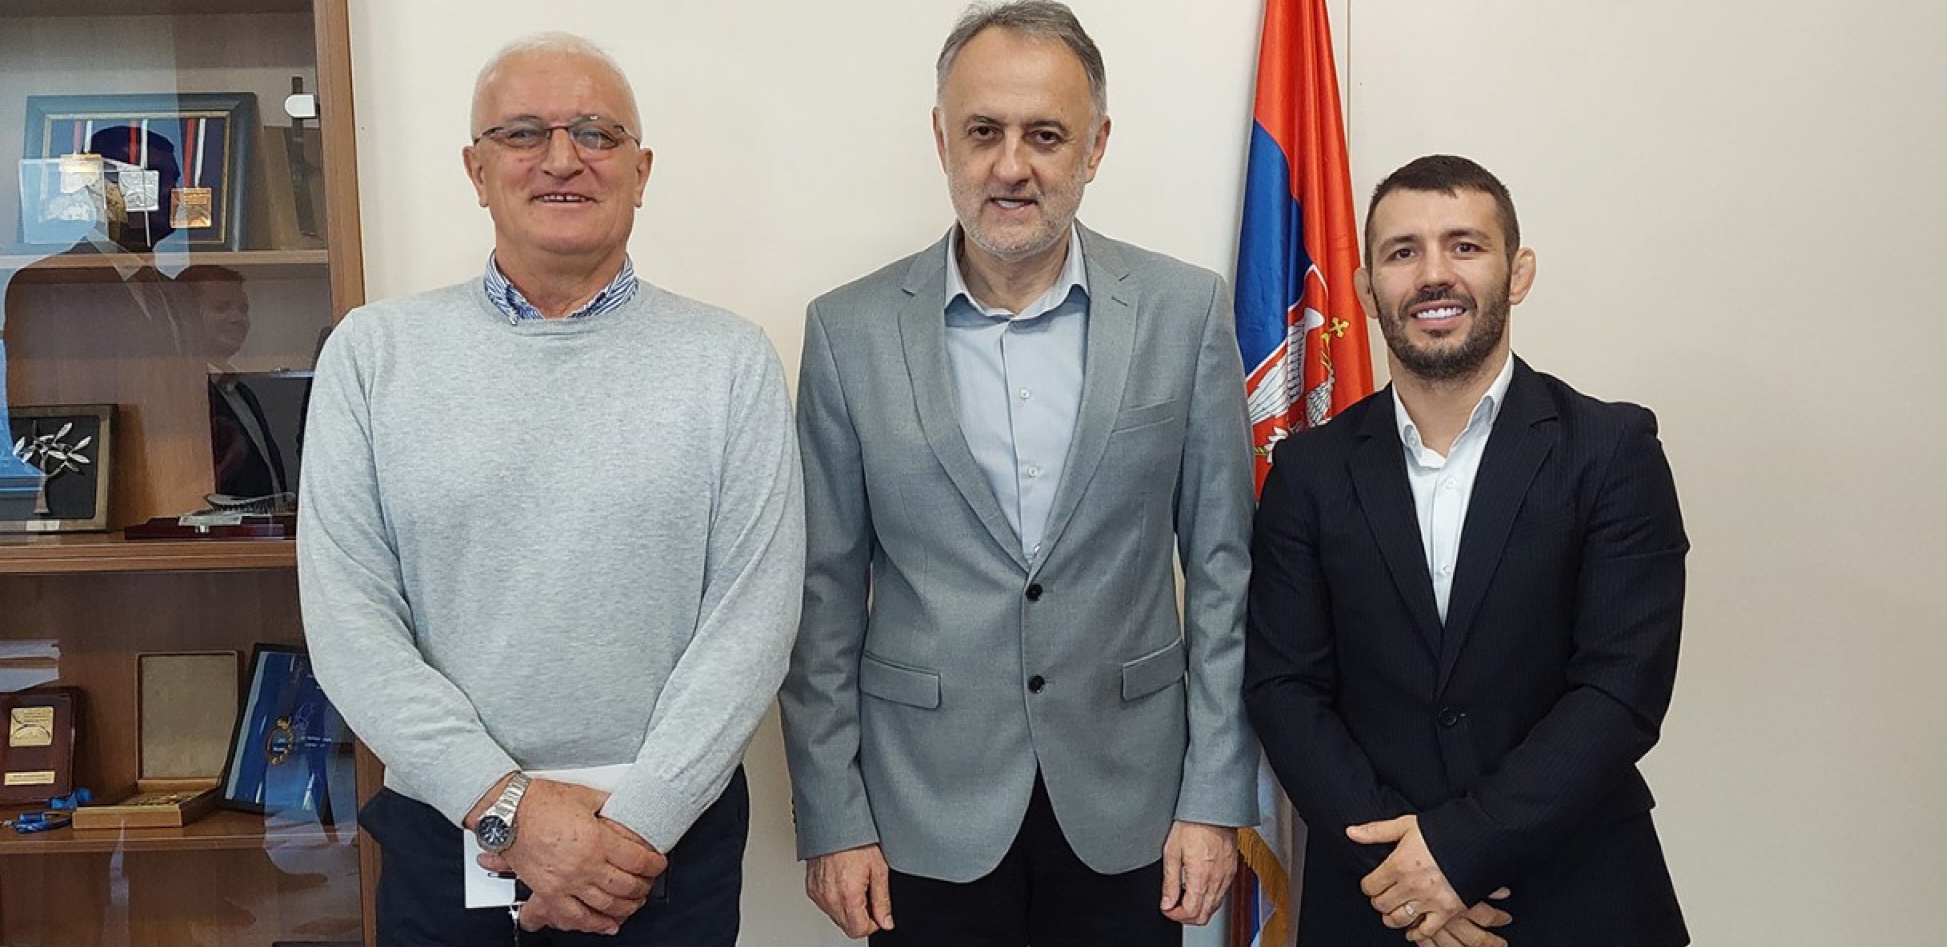 Ministar Gajić ugostio Davora Štefaneka i Zorana Mićovića